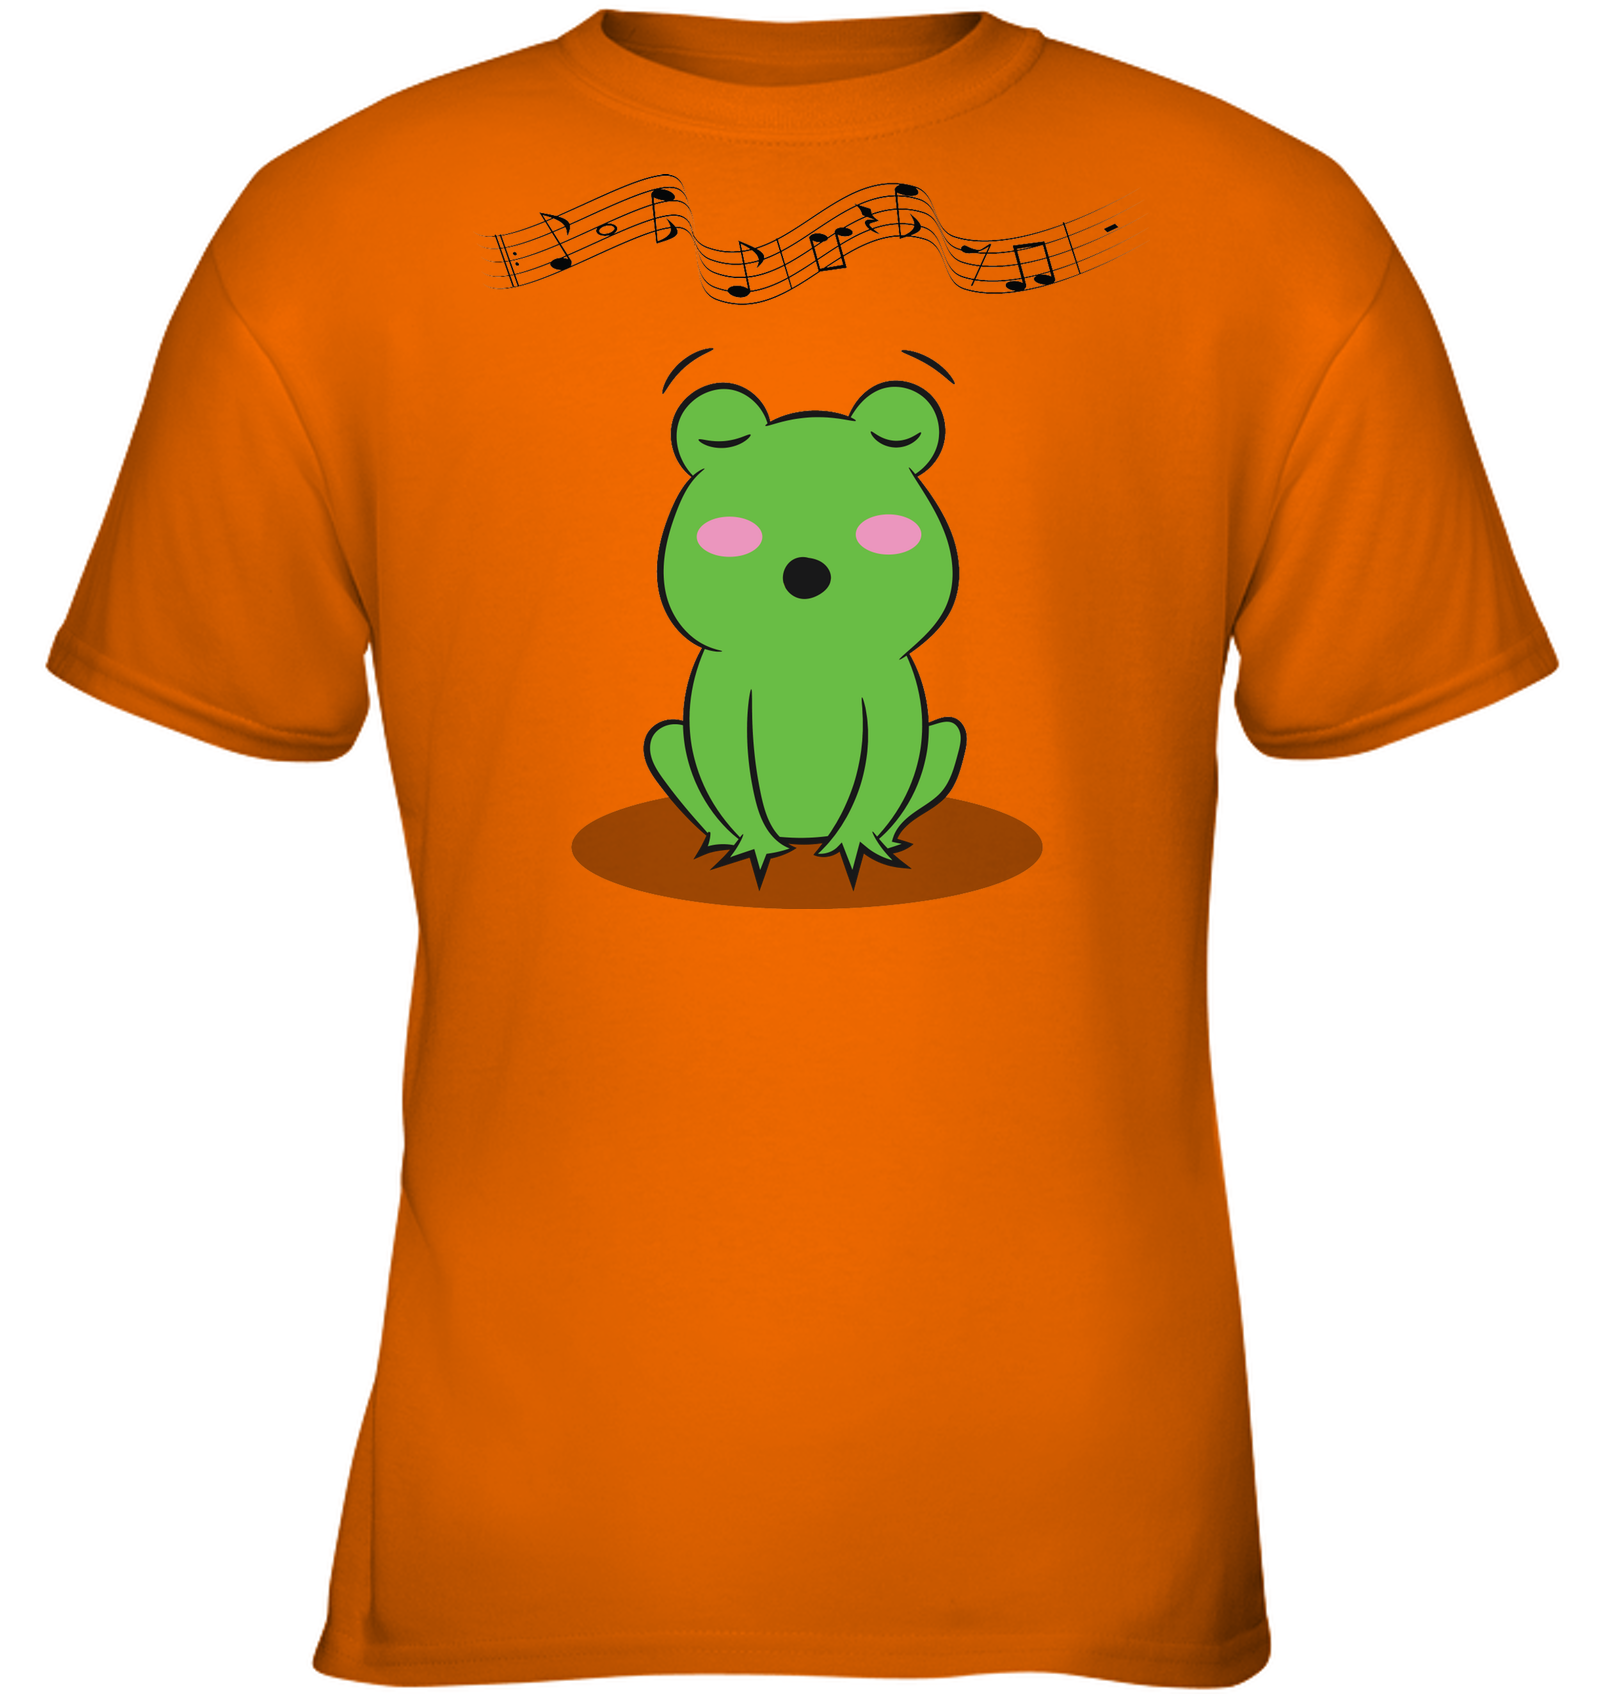 Singing Frog - Gildan Youth Short Sleeve T-Shirt